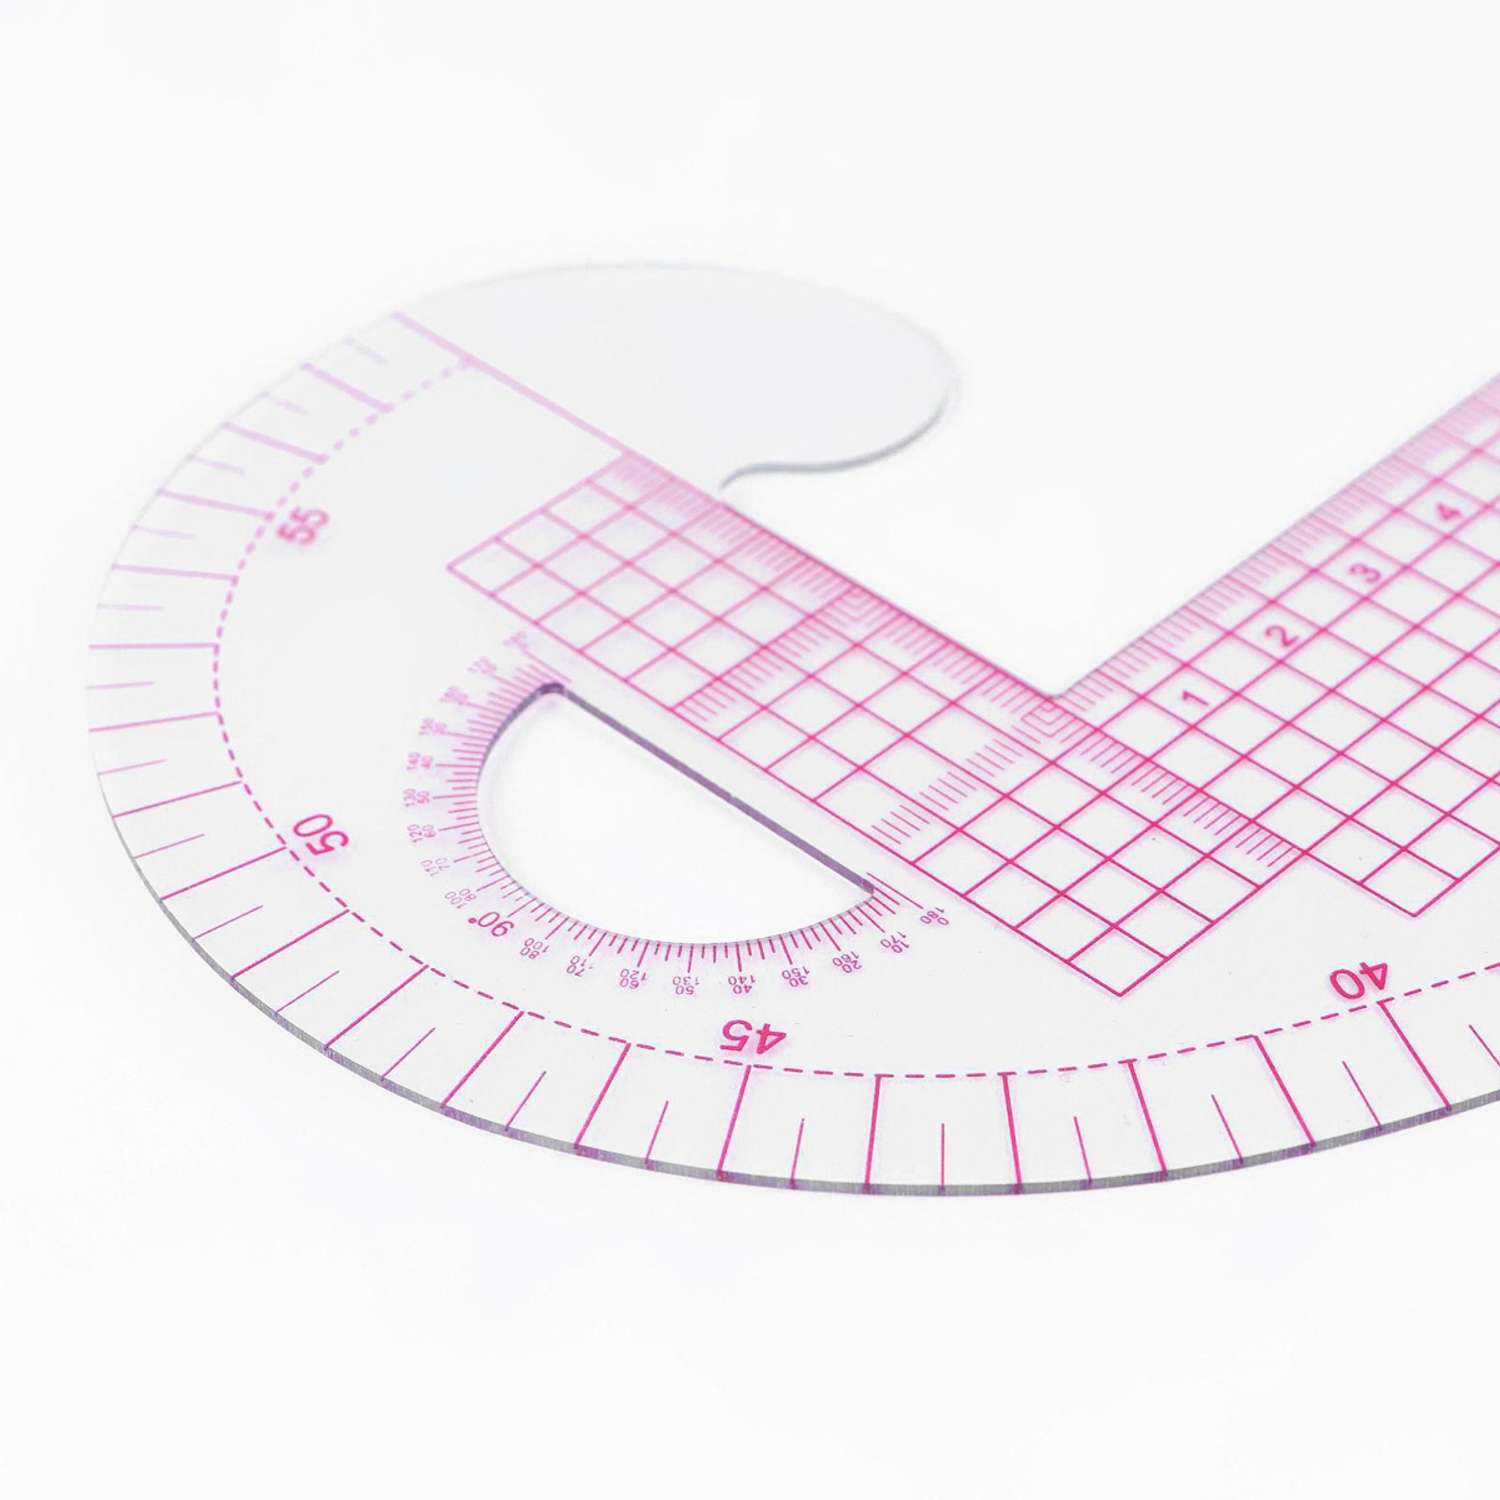 Лекало портновское Арт Узор метрическое для шитья изготовления игрушек конструирования выкройки Бочок 47х12.5 см - фото 2